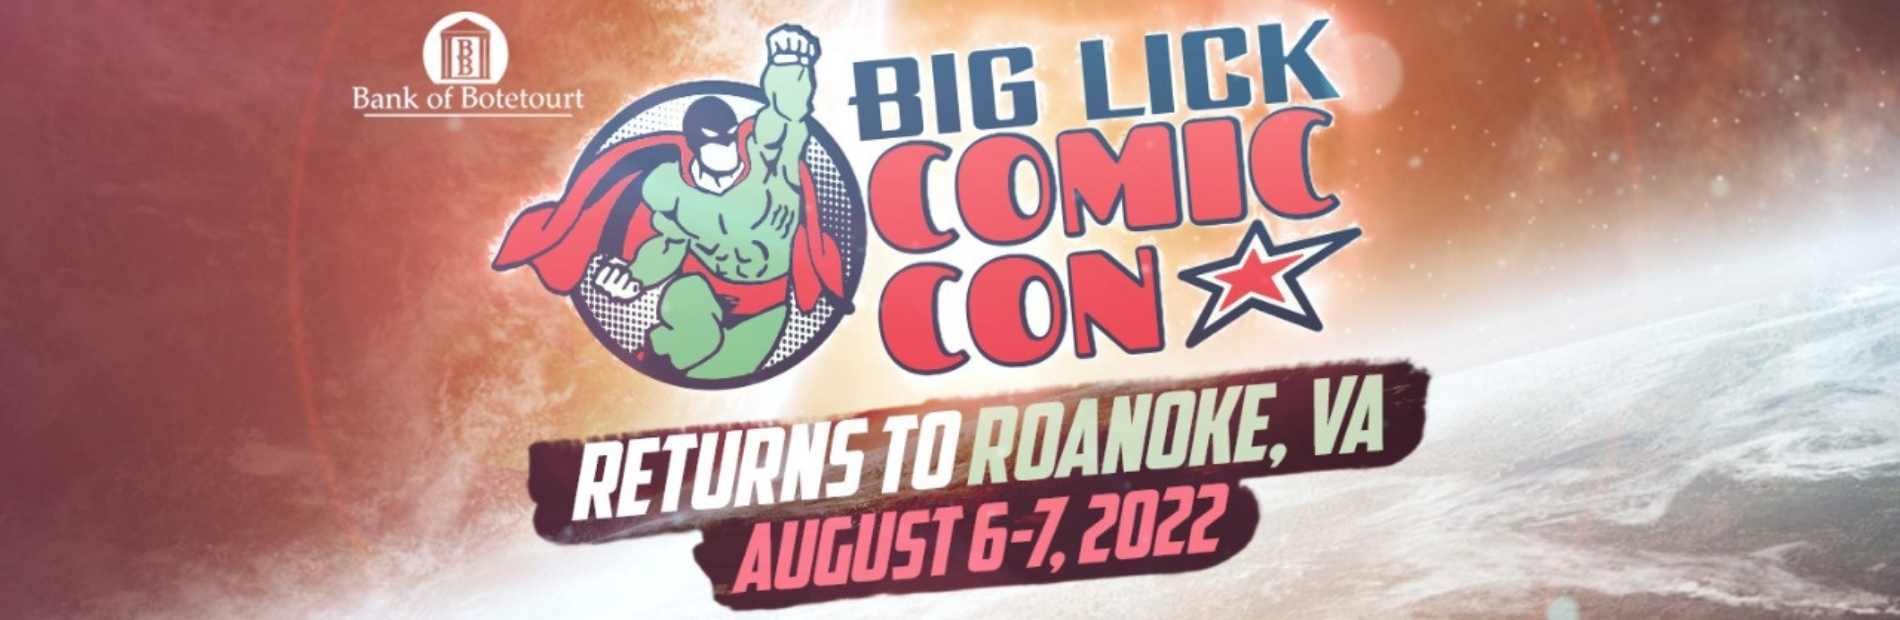 Events-Comic Con